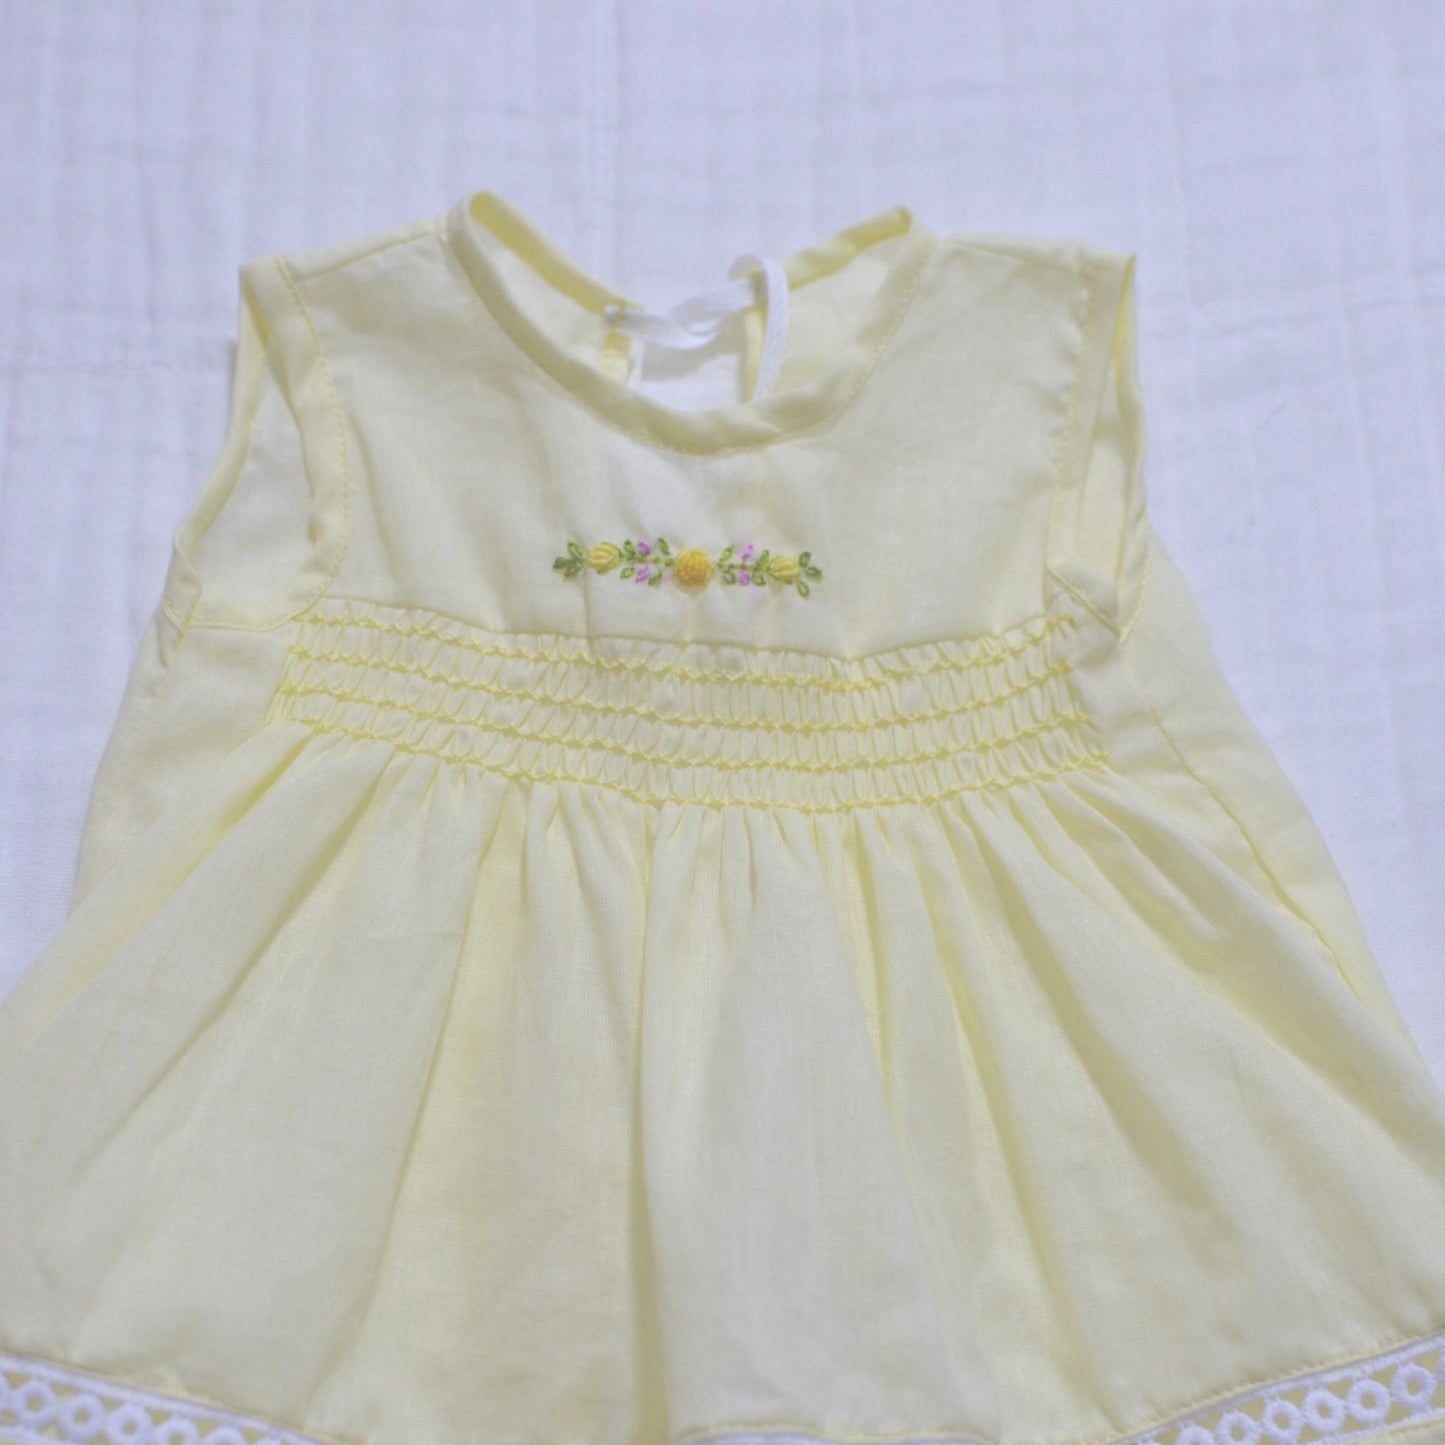 Handmade Smocked Newborn Dress Pink,Yellow - 0 to 3 month